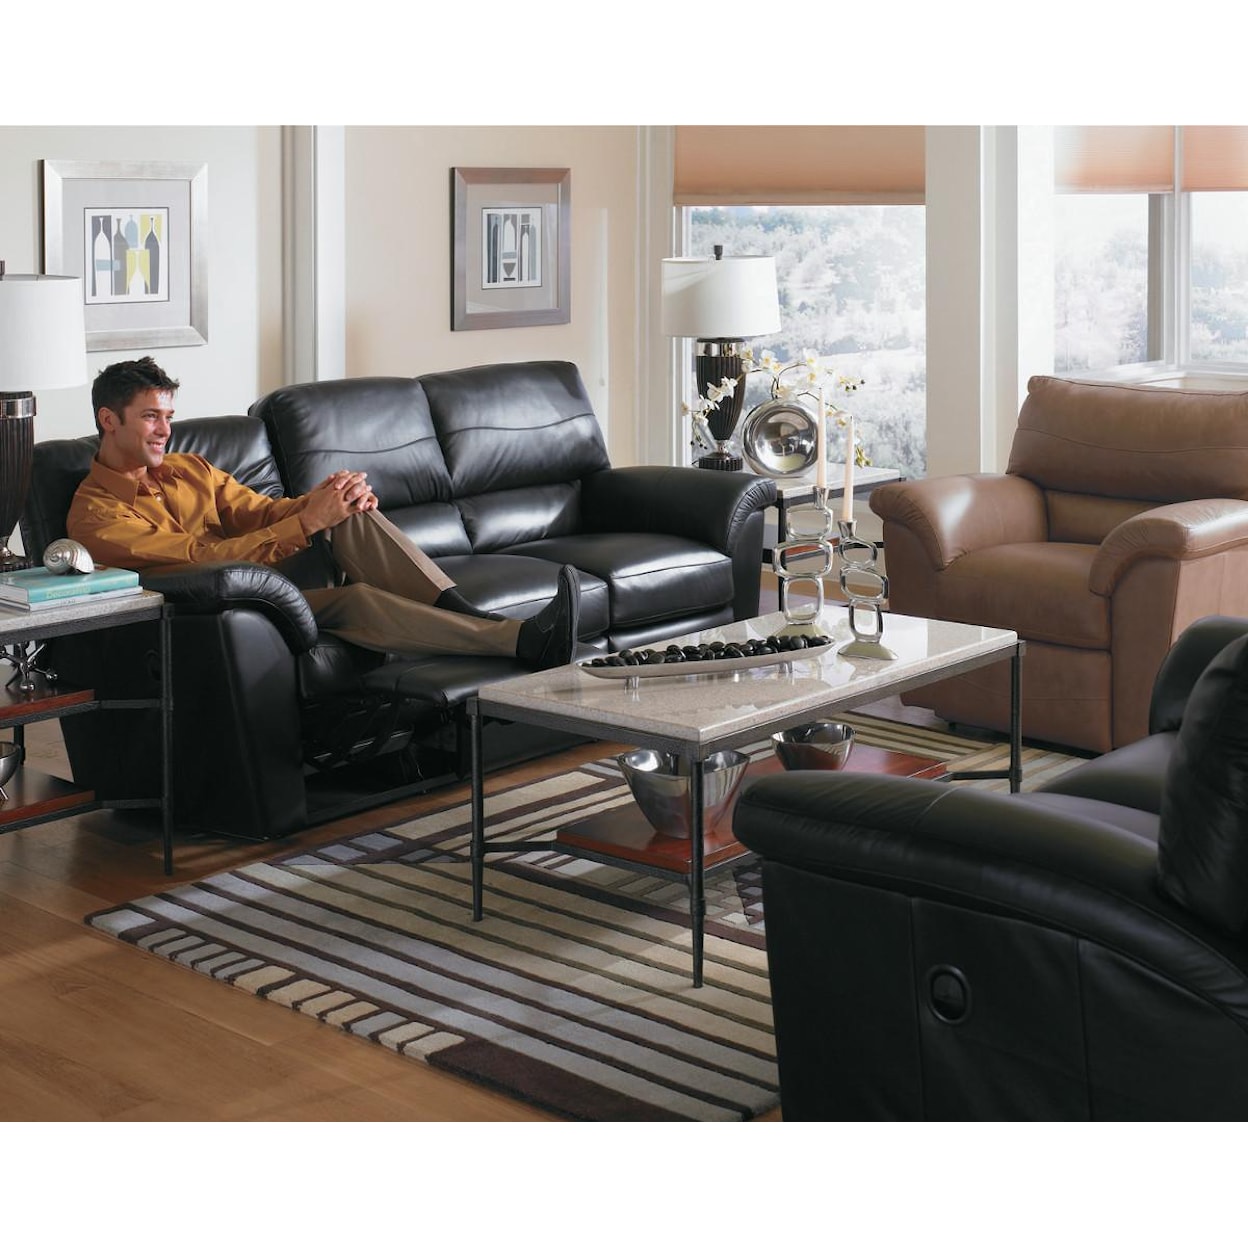 La-Z-Boy Reese Power La-Z-Time® Full Reclining Sofa